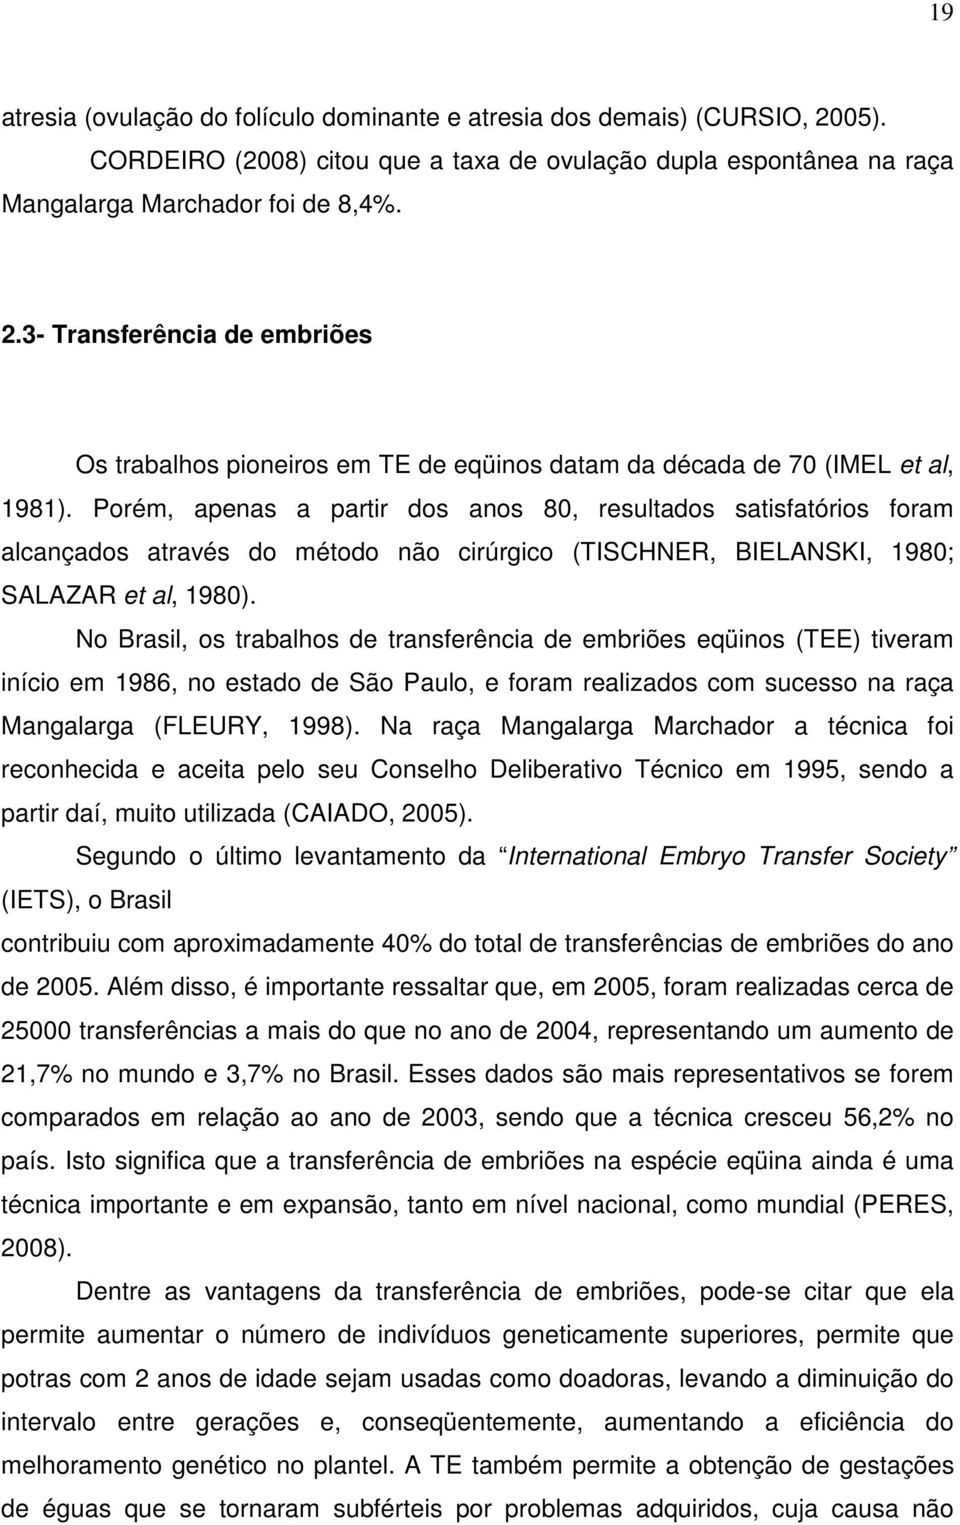 No Brasil, os trabalhos de transferência de embriões eqüinos (TEE) tiveram início em 1986, no estado de São Paulo, e foram realizados com sucesso na raça Mangalarga (FLEURY, 1998).